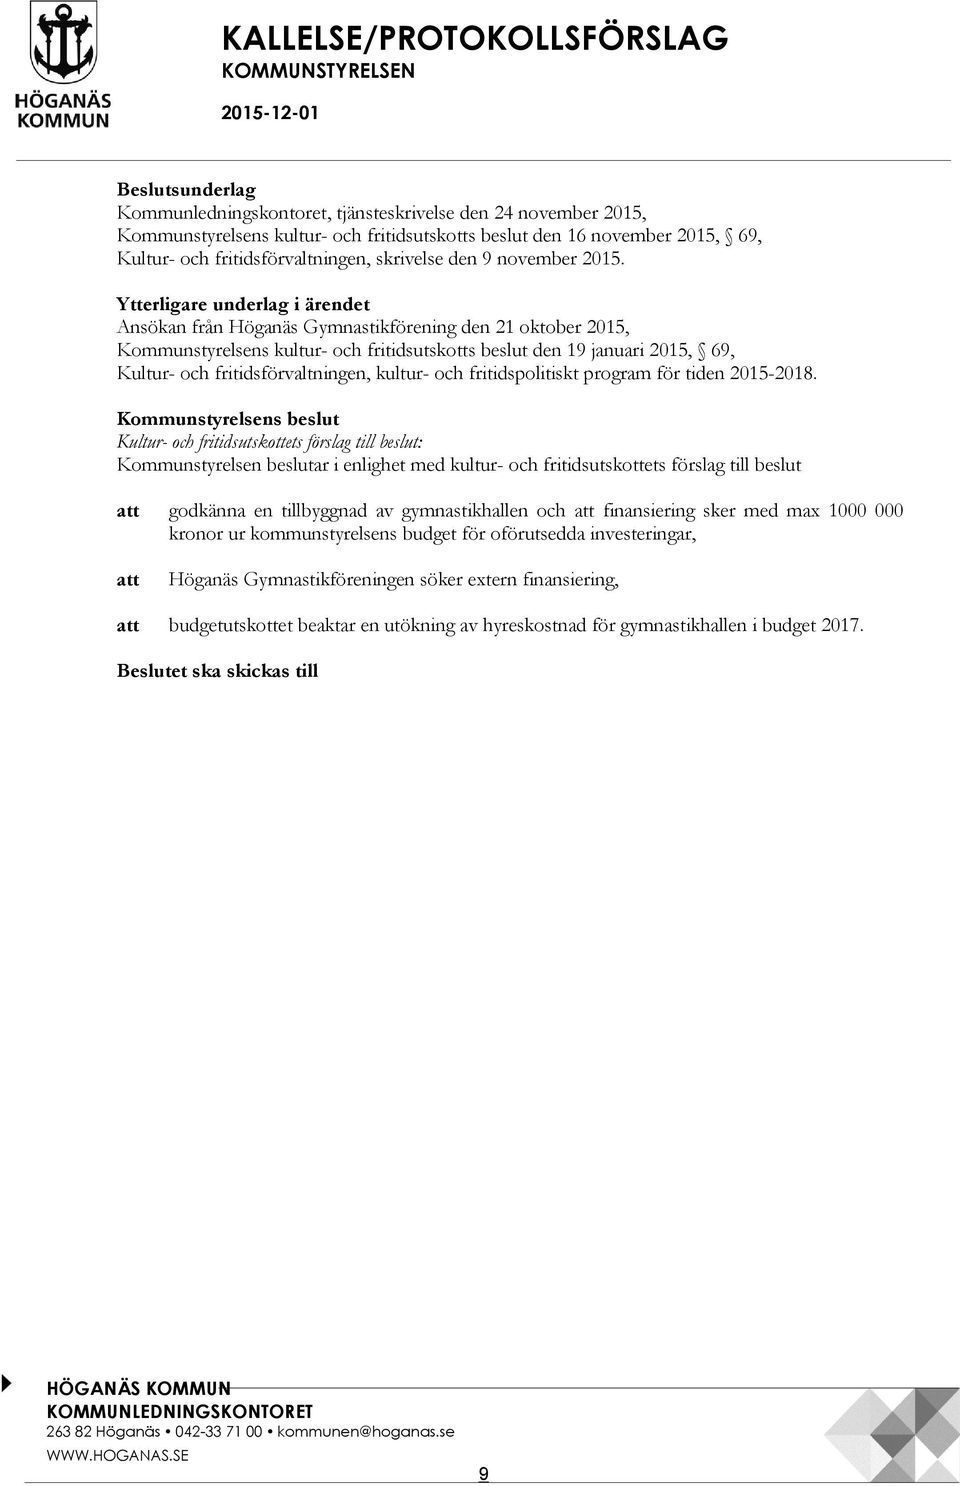 Ytterligare underlag i ärendet Ansökan från Höganäs Gymnastikförening den 21 oktober 2015, Kommunstyrelsens kultur- och fritidsutskotts beslut den 19 januari 2015, 69, Kultur- och